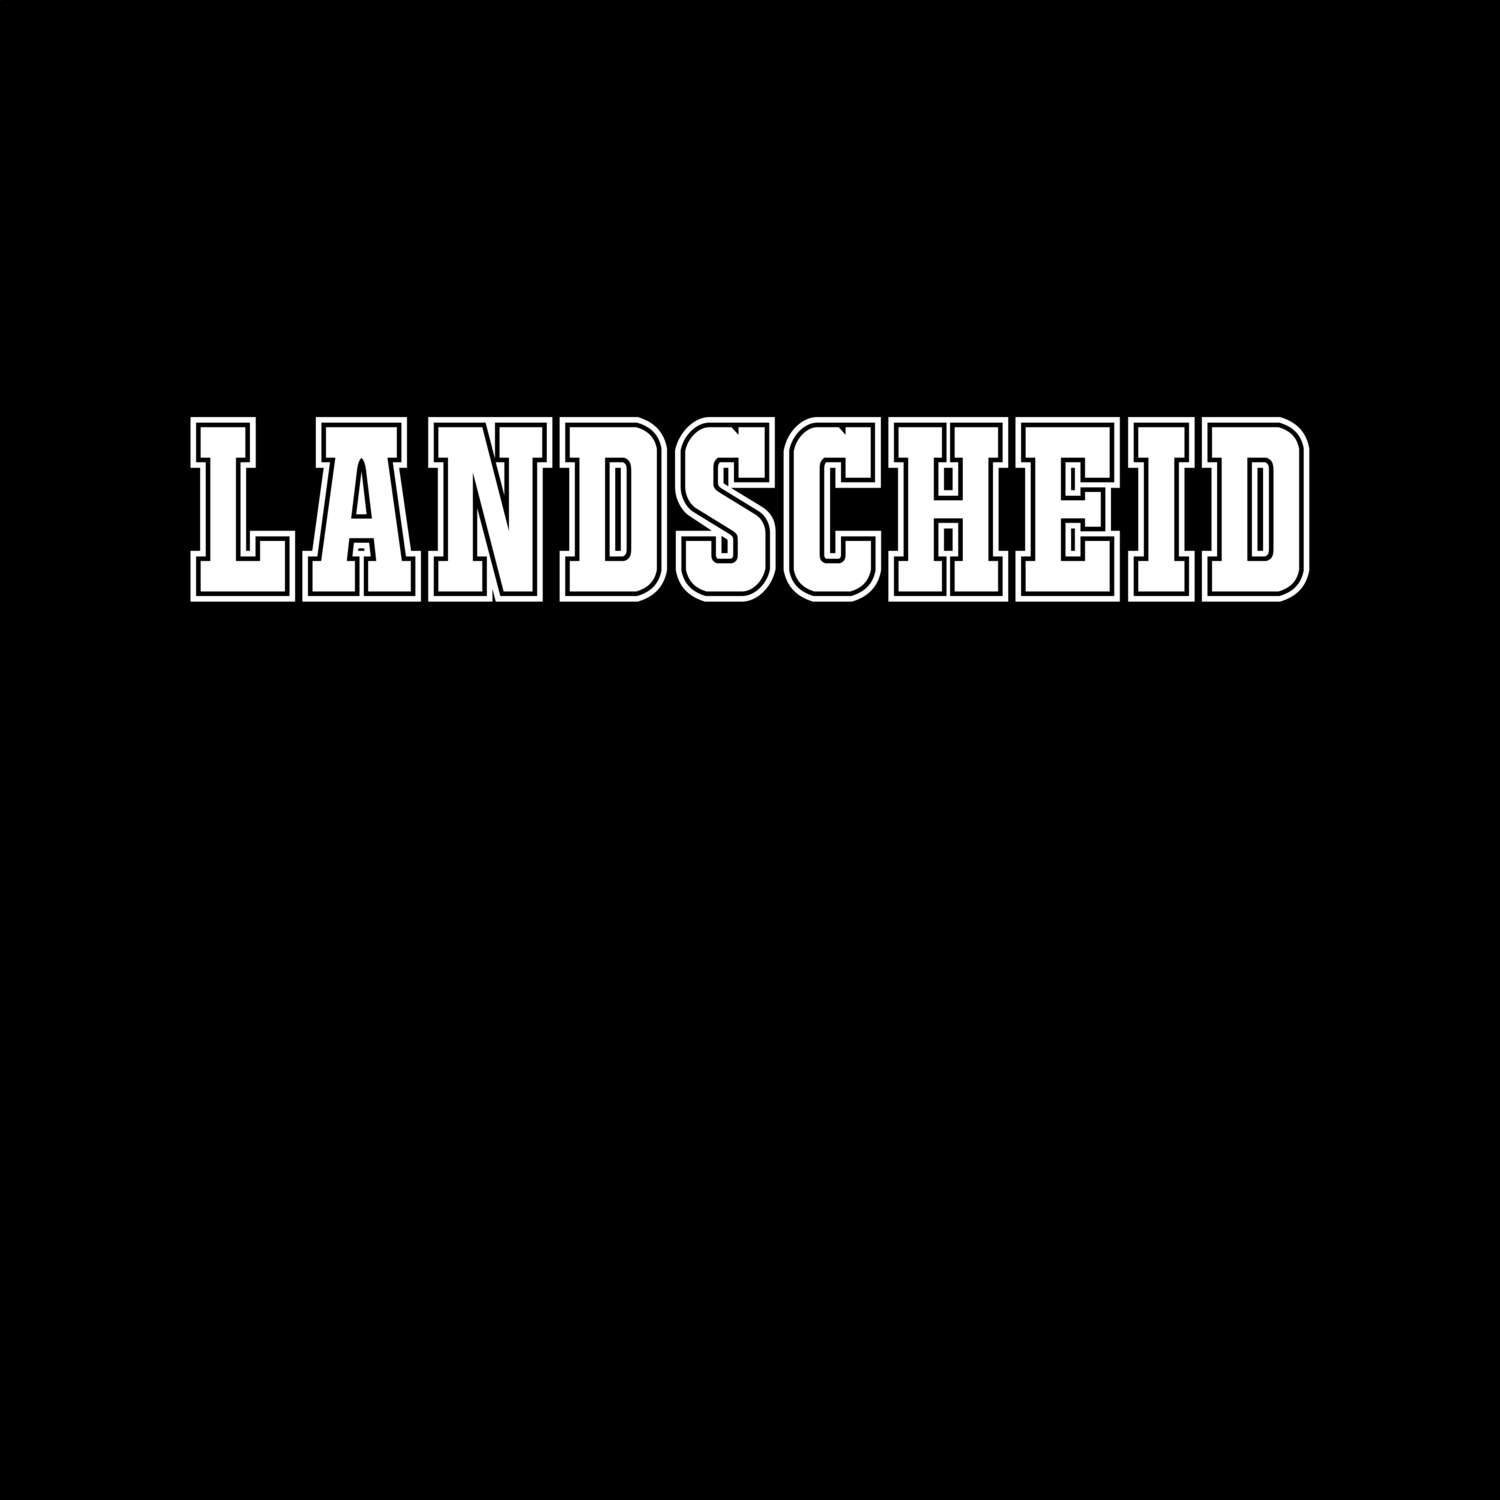 Landscheid T-Shirt »Classic«